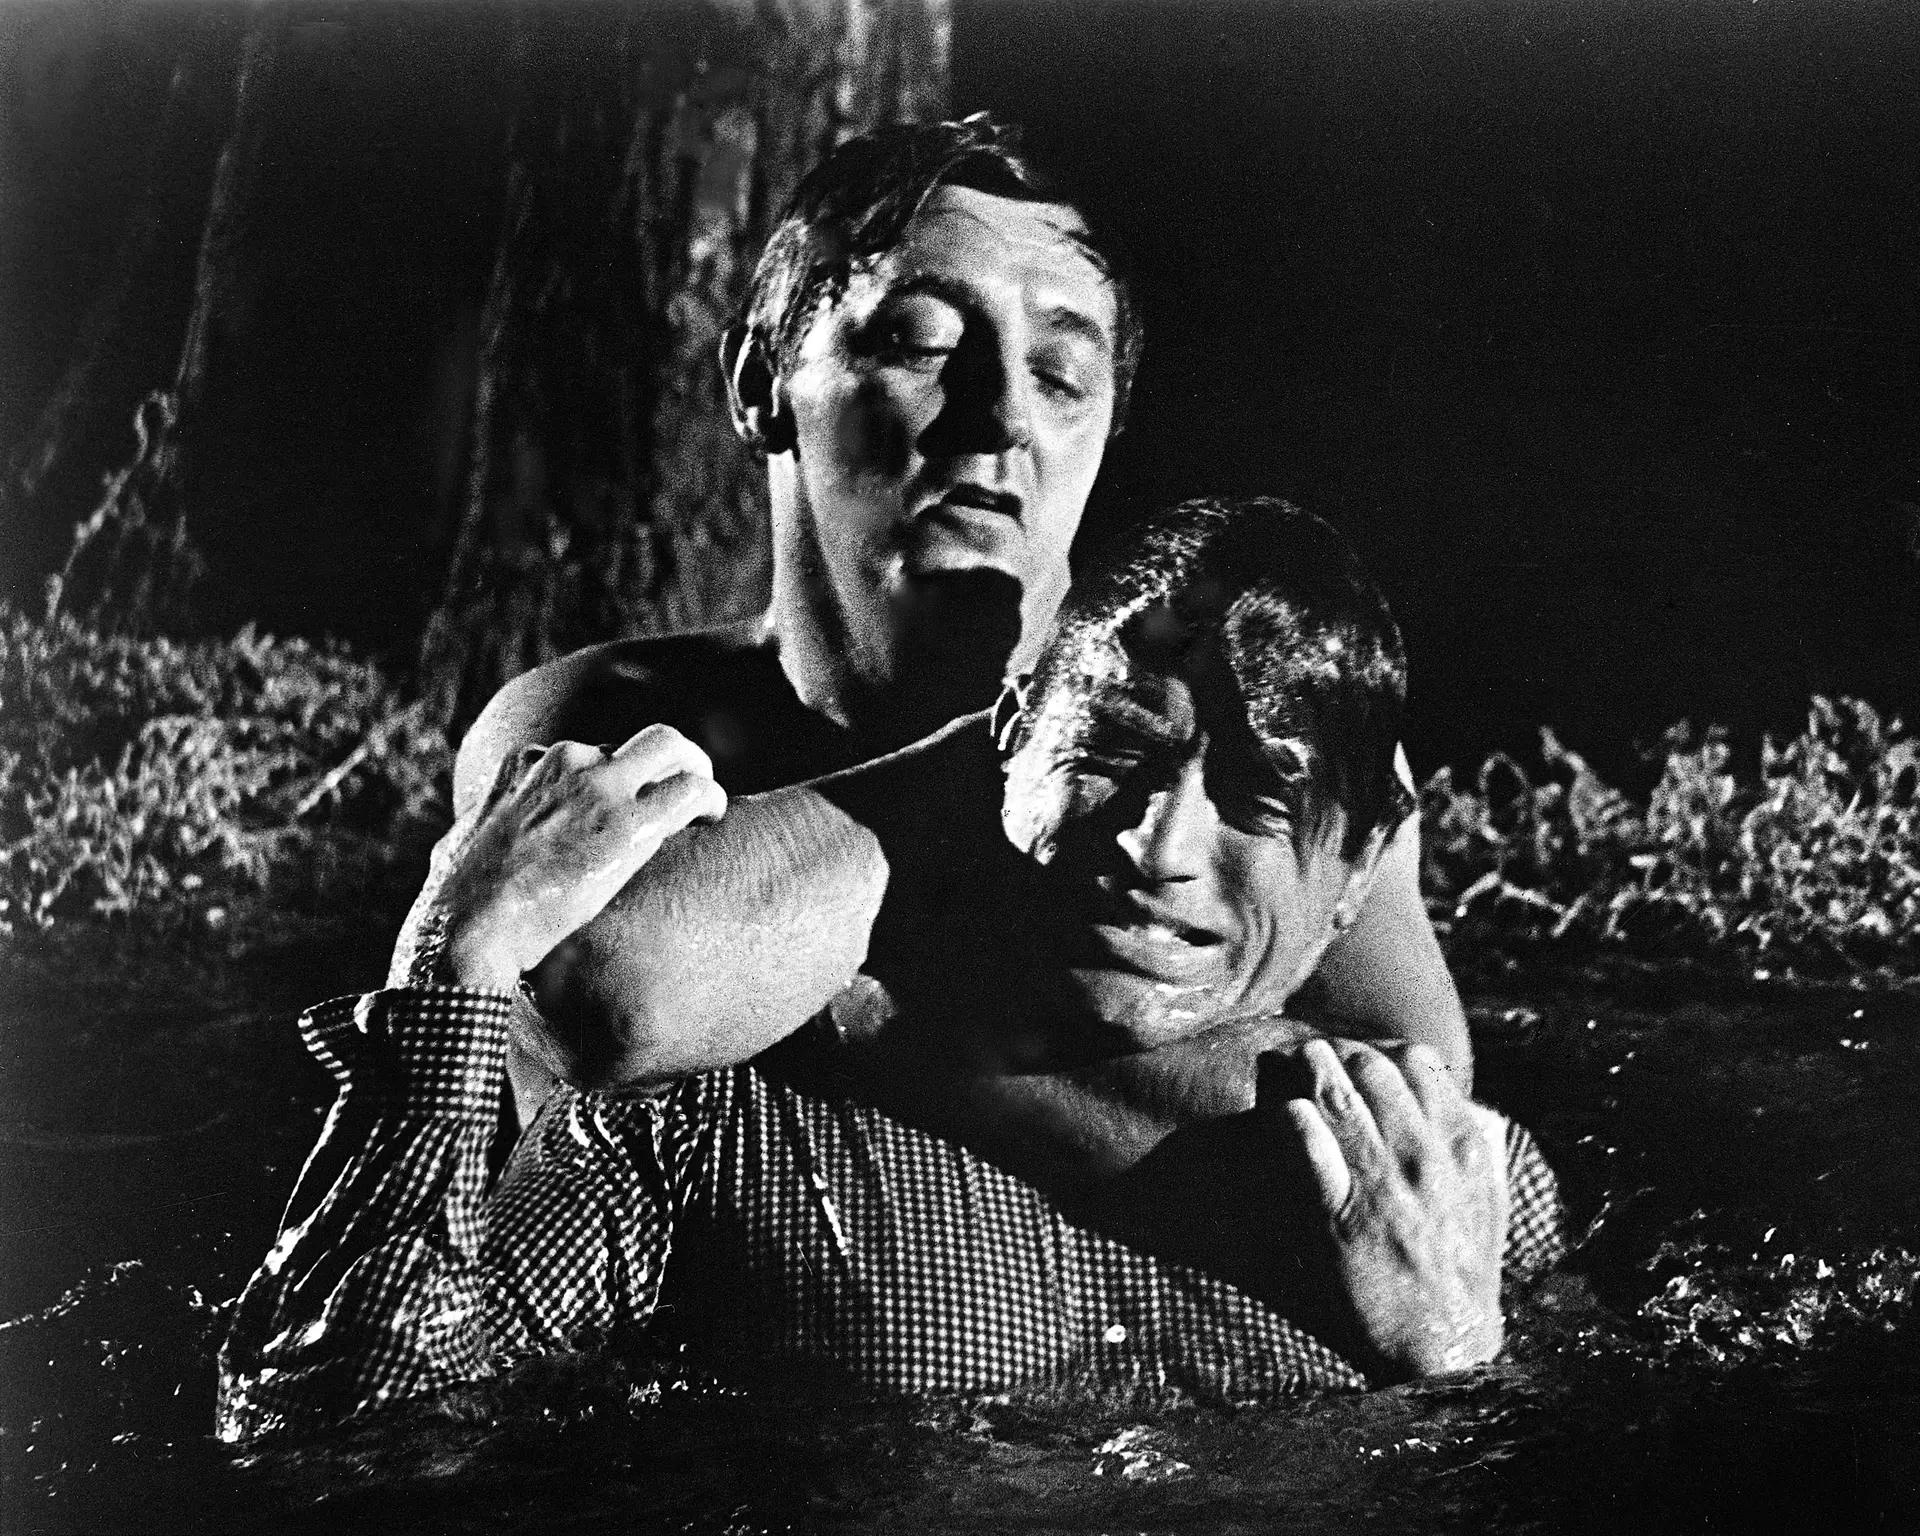 Robert Mitchum ‘estrangula’ Gregory Peck em “Cape Fear”, filme de 1962 que terá sido o último a que assistiu Ian Curtis (1956-1980), da banda britânica Joy Division